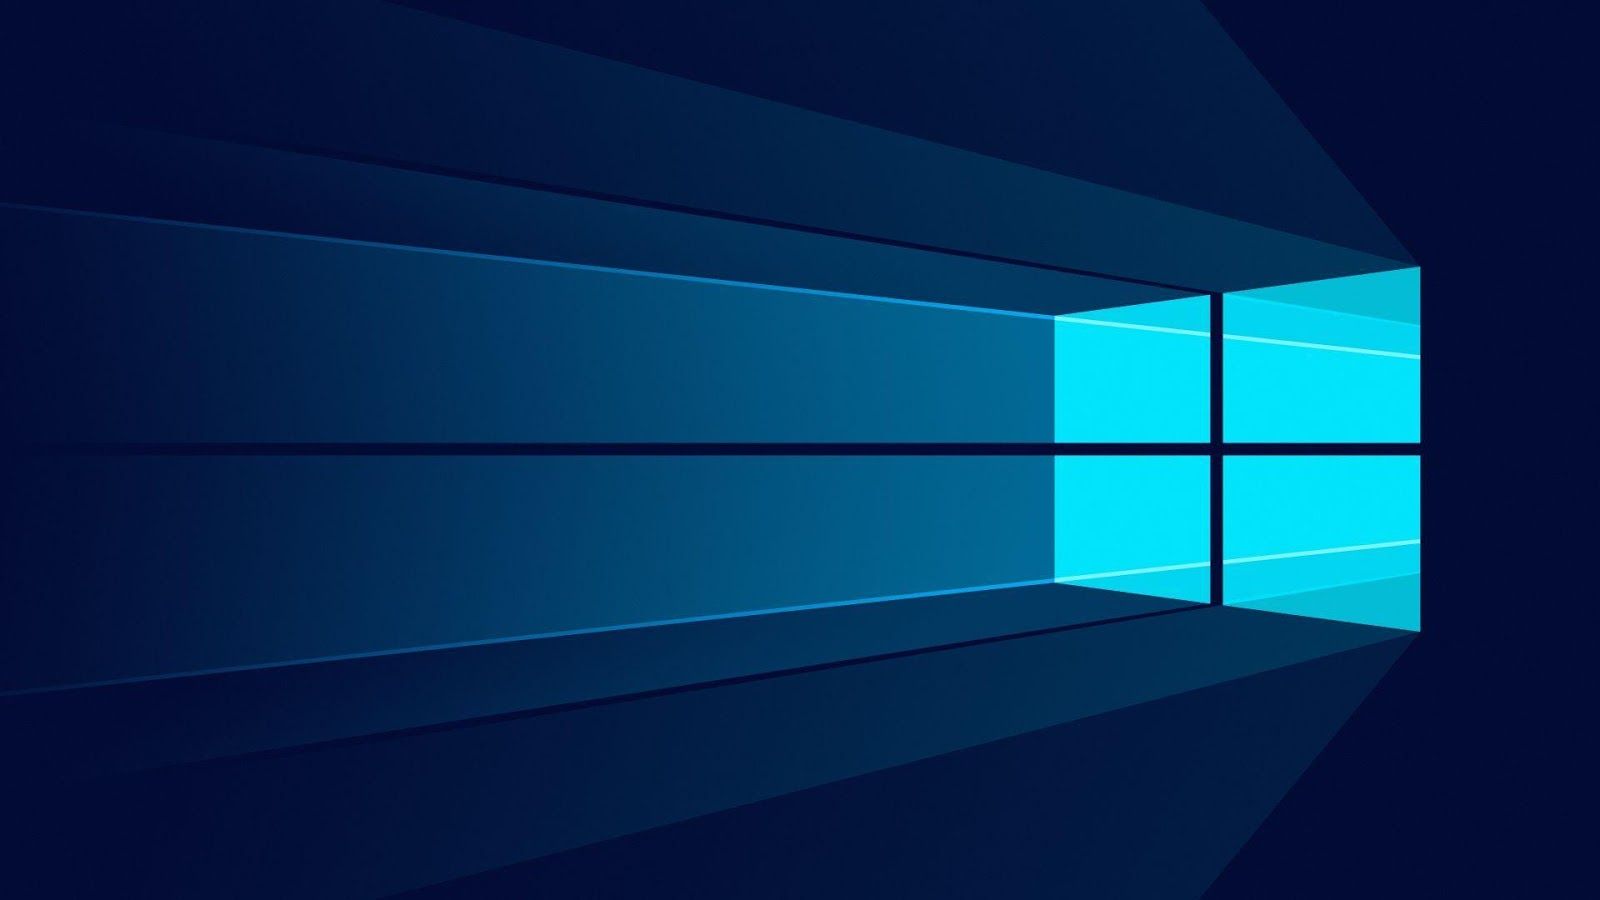 Microsoft tung bản cập nhật Windows 10 sửa lỗi tuột fps khi chơi game, mời các bạn tải về